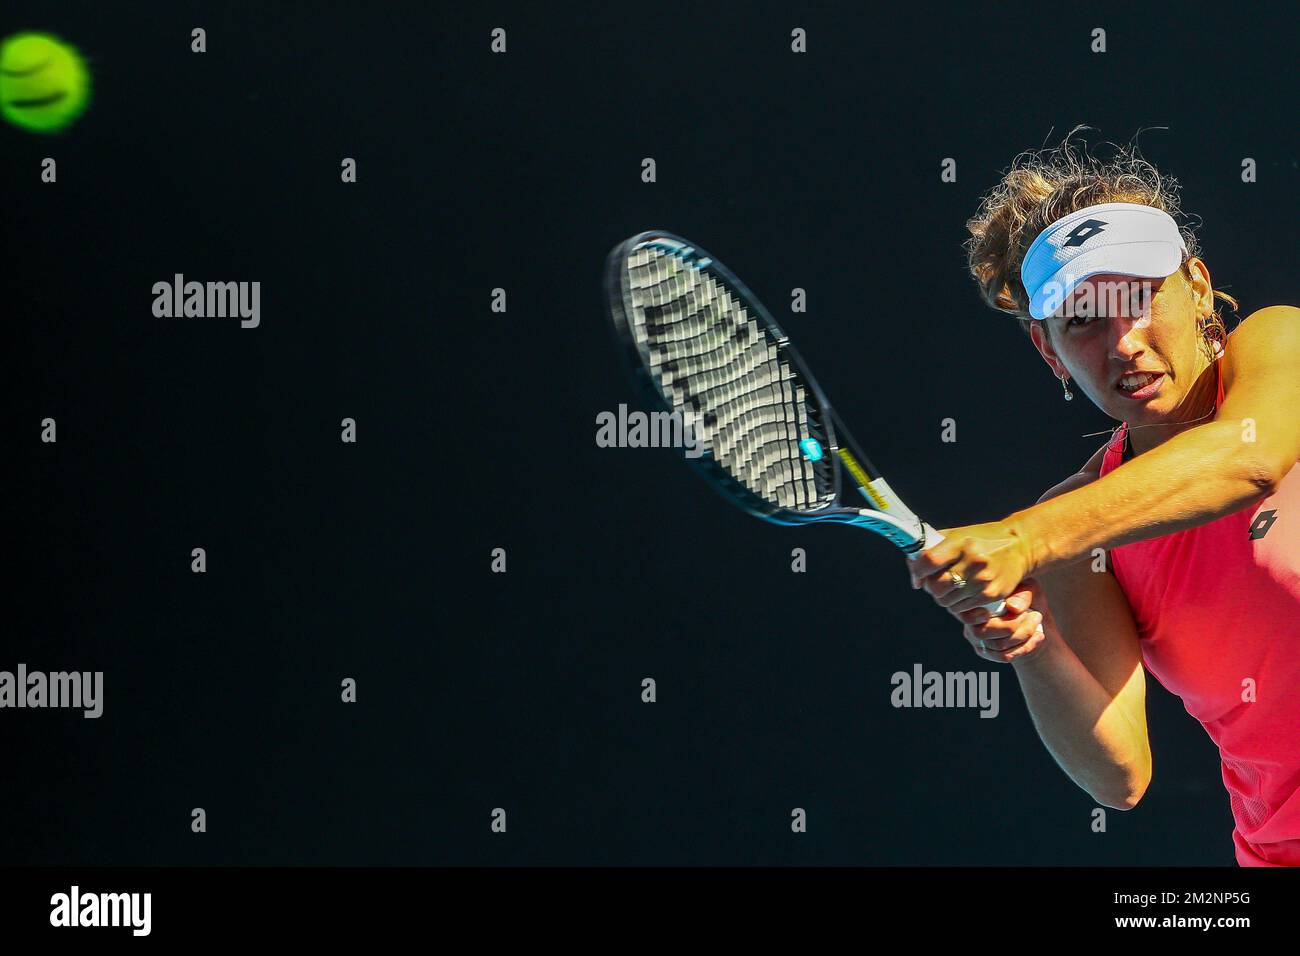 Elise Mertens è stato raffigurato in azione durante una sessione di allenamento al Grand Slam di tennis 'Australian Open', sabato 12 gennaio 2019 a Melbourne Park, Melbourne, Australia. Questo primo grande slam della stagione si svolgerà dal 14 al 27 gennaio. FOTO DI BELGA PATRICK HAMILTON Foto Stock